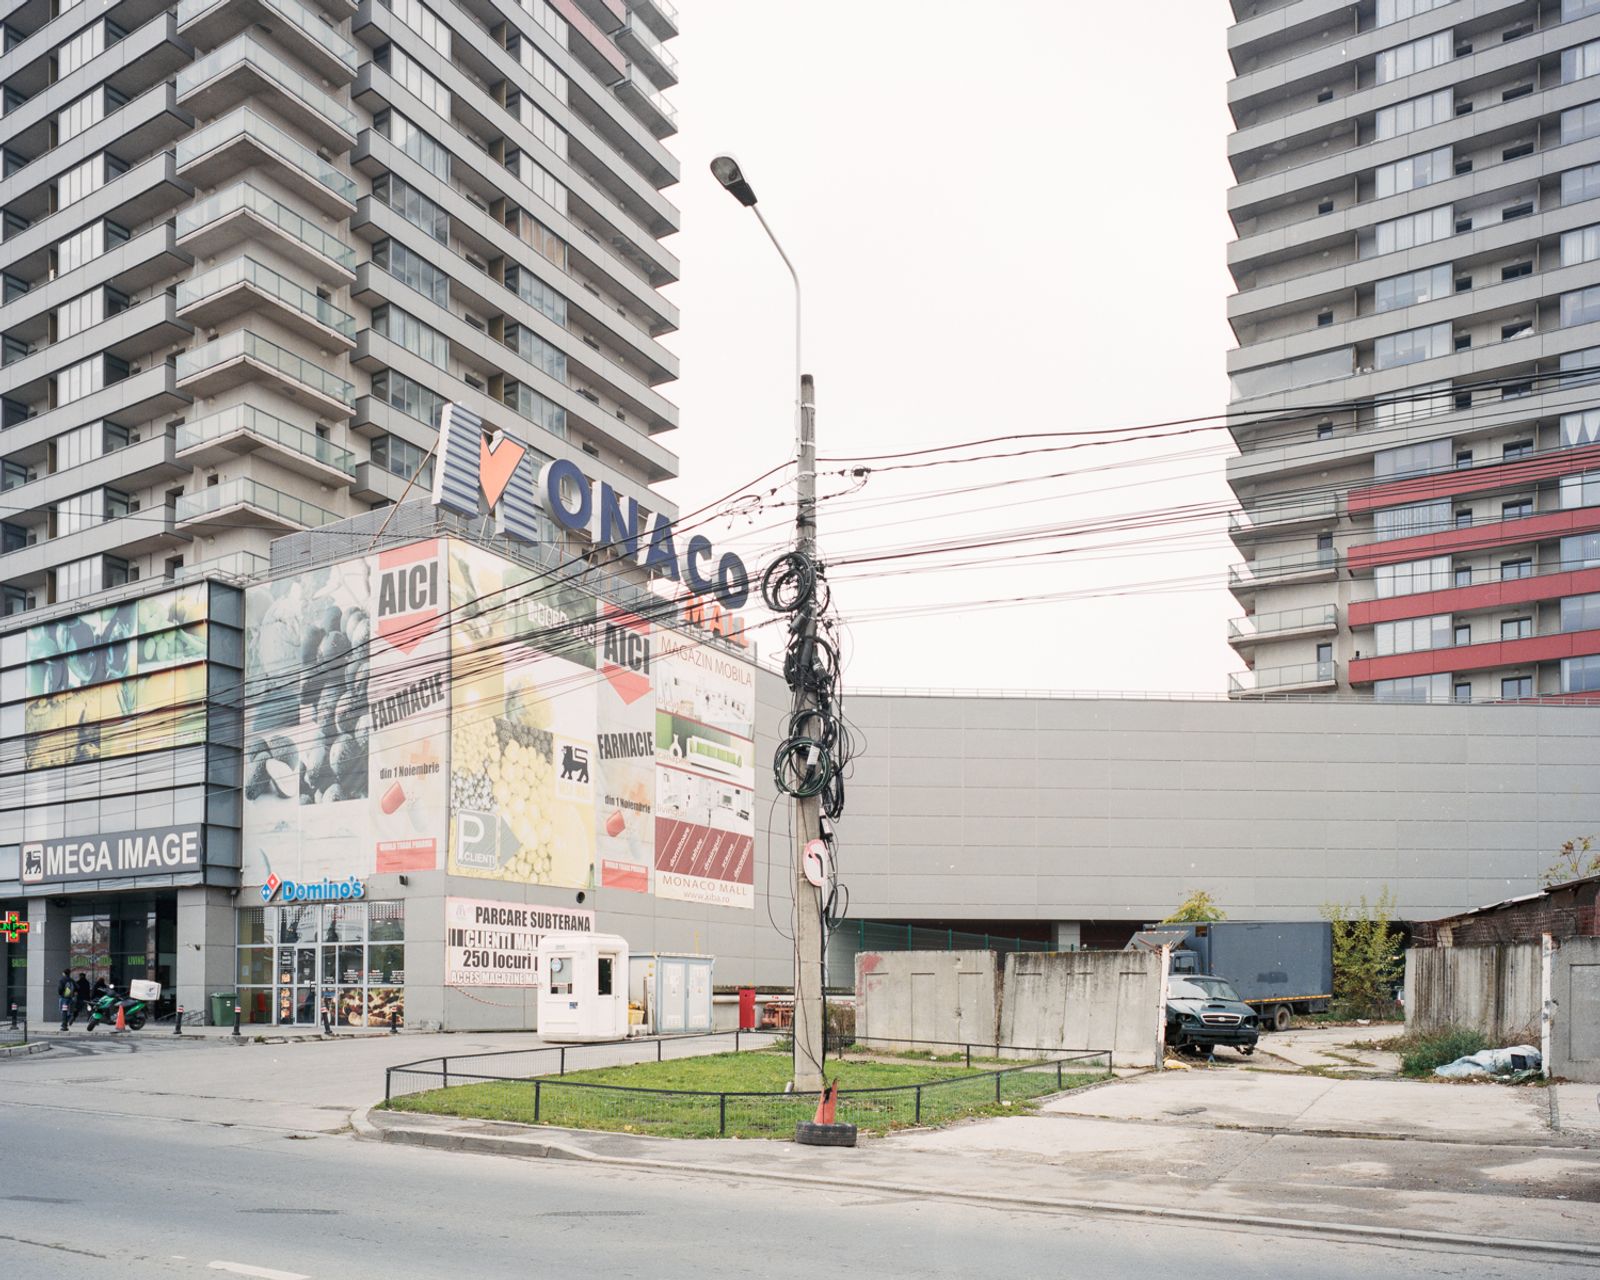 © Paweł Jaśkiewicz - Image from the Serene urbanism photography project